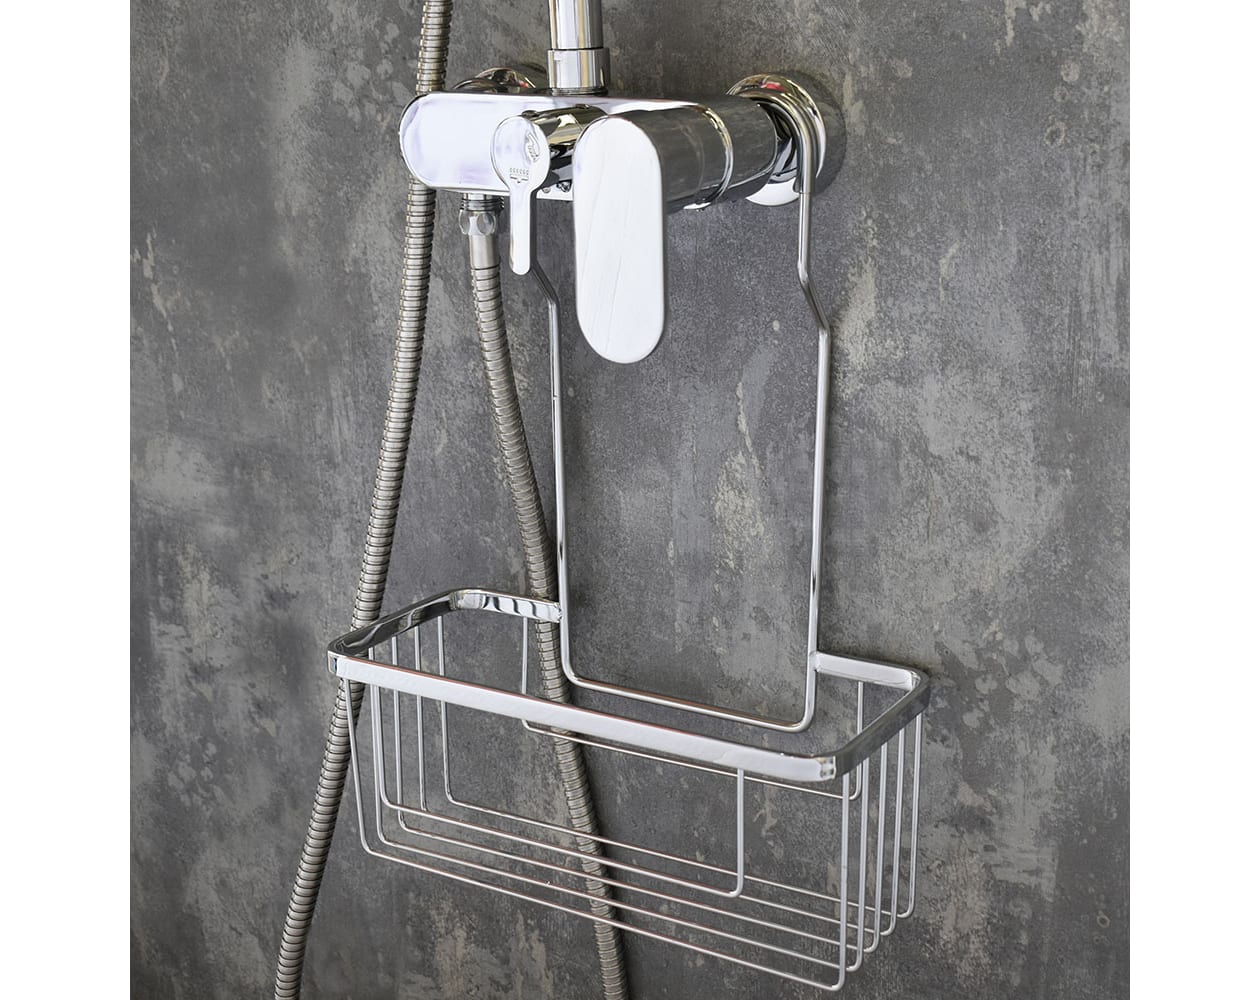 Cesto ducha doble con colgador para mampara aluminio